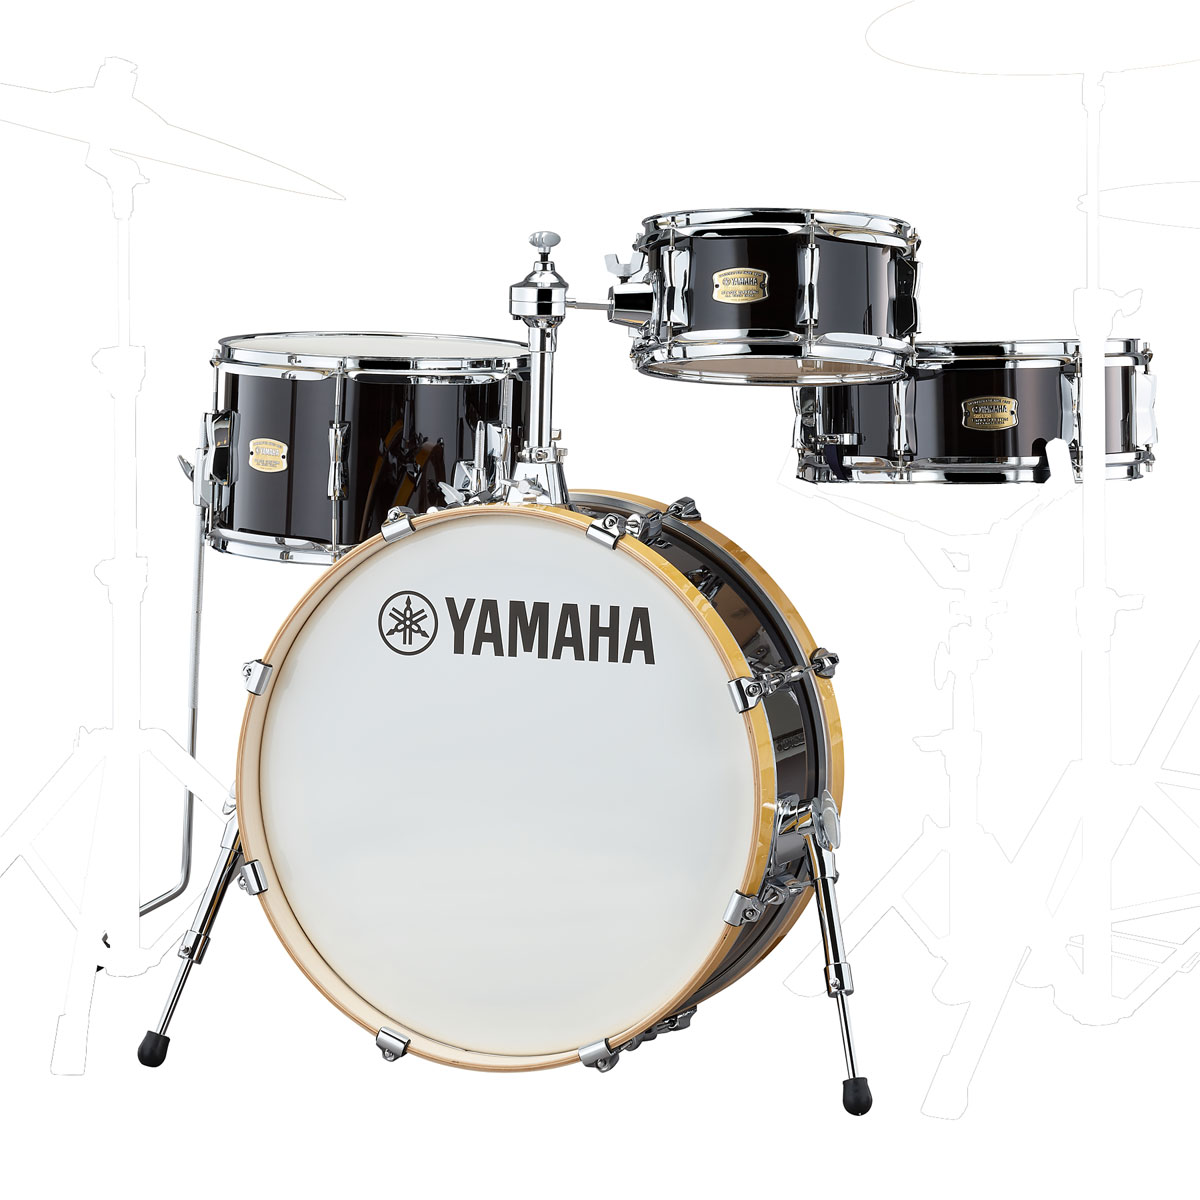 YAMAHA Stage Custom Hip (SBP0F4H) ヤマハドラムの代名詞ともいえる100%バーチシェルを使用したステージカスタムシリーズのコンパクトキット。20"×8"の浅胴バスドラムを採用することで、バスドラムが持つ低音域はそのままにコンパクトなセッティングを実現しました。フロアタムはスナッピーを搭載しており、フロアタイプのスネアドラムとして演奏可能。サブスネアとして、多様な音楽ジャンルで性能を発揮します。 【キット内容】 ●バスドラム 20"x8" ●フロアタム 13"x8" ●タムタム 10"x5" ●スネアドラム 13"x5 ●タムクランプCL940LB付属 ※注：シンバル類、スタンド類、フットペダル、ドラムスツール、ドラムスティックは別売です。スネアスタンドも別売ですのでご注意ください。 主な特長：独特なサイズ構成・バーチ材100%シェル・コンパクトなセッティング ステージカスタムヒップは、コンパクトドラムセットとして新たなコンセプトを実現する為、ユニークなサイズ構成を採用、20“x8”バスドラム、13”x8”フロアタム、10”x5“タムタム、13”x5”スネアドラムにて構成されるシンプルな4点キットとなります。13”x8”のフロアタムにスナッピー(20本)を搭載しておりフロアタイプのスネアドラムとして演奏可能、サブスネアとして多様な音楽ジャンルにて性能を発揮します。シェルにはバーチ材100%、6プライシェルを採用。バーチ材特有の中低音域の豊かさと共に抜けのよいシェル鳴りを実現します。ドラムセット4点全てに浅胴シェルを採用したことで、自宅や小スペースライブ環境でのセッティングにおいて、その性能を最大限発揮します。また、コンパクトドラムセットならでは運搬性能も兼ね揃えています。 バスドラムフープにはナチュラルウッドカラーのウッドフープを採用し木のぬくもりを感じられるフィニッシュとなっています。 ◎20"×8"のバスドラム： 口径20インチ・深さ8インチのバスドラムを採用することで、バスドラムの特徴である豊かな低音域の鳴り、コンパクトなセッティング、双方を実現しています。 ◎スナッピー搭載のフロアタム： フロアタムは20本タイプのスナッピーを搭載しており、フロアタイプのスネアドラムとして演奏可能。ジャズやポップ・ミュージックだけでなく、ヒップホップ、R&Bなどあらゆる音楽ジャンルで性能を発揮します。 ◎コンパクトなセッティング： 通常のバスドラムより薄い浅胴のシェルとすることでセット全体が非常にコンパクトとなり、小さな会場でも容易にセッティング可能です。 ◎100%バーチシェル： シェルには、ヤマハドラムの代名詞ともいえるバーチ材100%、6プライシェルを採用。バーチ材特有の中低音域の豊かさとともに、抜けの良いシェル鳴りを実現します。 ◎ボールマウント＆クランプ： ヤマハ独自のボールマウントとクランプは、ウイングボルトでスティールプレートを締め付け、内蔵された硬質合成樹脂ボールを固定するため、すぐれた安定性と正確な位置を保ちながらドラムをあらゆる角度にセットすることができます。 ◎自宅練習にも最適： コンパクトなサイズ構成のステージカスタムヒップに、Zildjianシンバル「L80 ローボリュームシリーズ」（※別売）と消音性能に優れた市販のメッシュヘッド（※別売）をセットすることで、自宅練習に最適な消音かつコンパクトな練習セットをつくることが可能です。さらにエレクトロニックアコースティックドラムモジュール「EAD10」（※別売）、ドラムトリガー「DT50S / DT50K」（※別売）を組み込むことで、様々なサウンドが演奏可能なハイブリッドドラムキットを楽しむことができます。 ※説明書等は付属しません。 ■保証:無し UD20200402